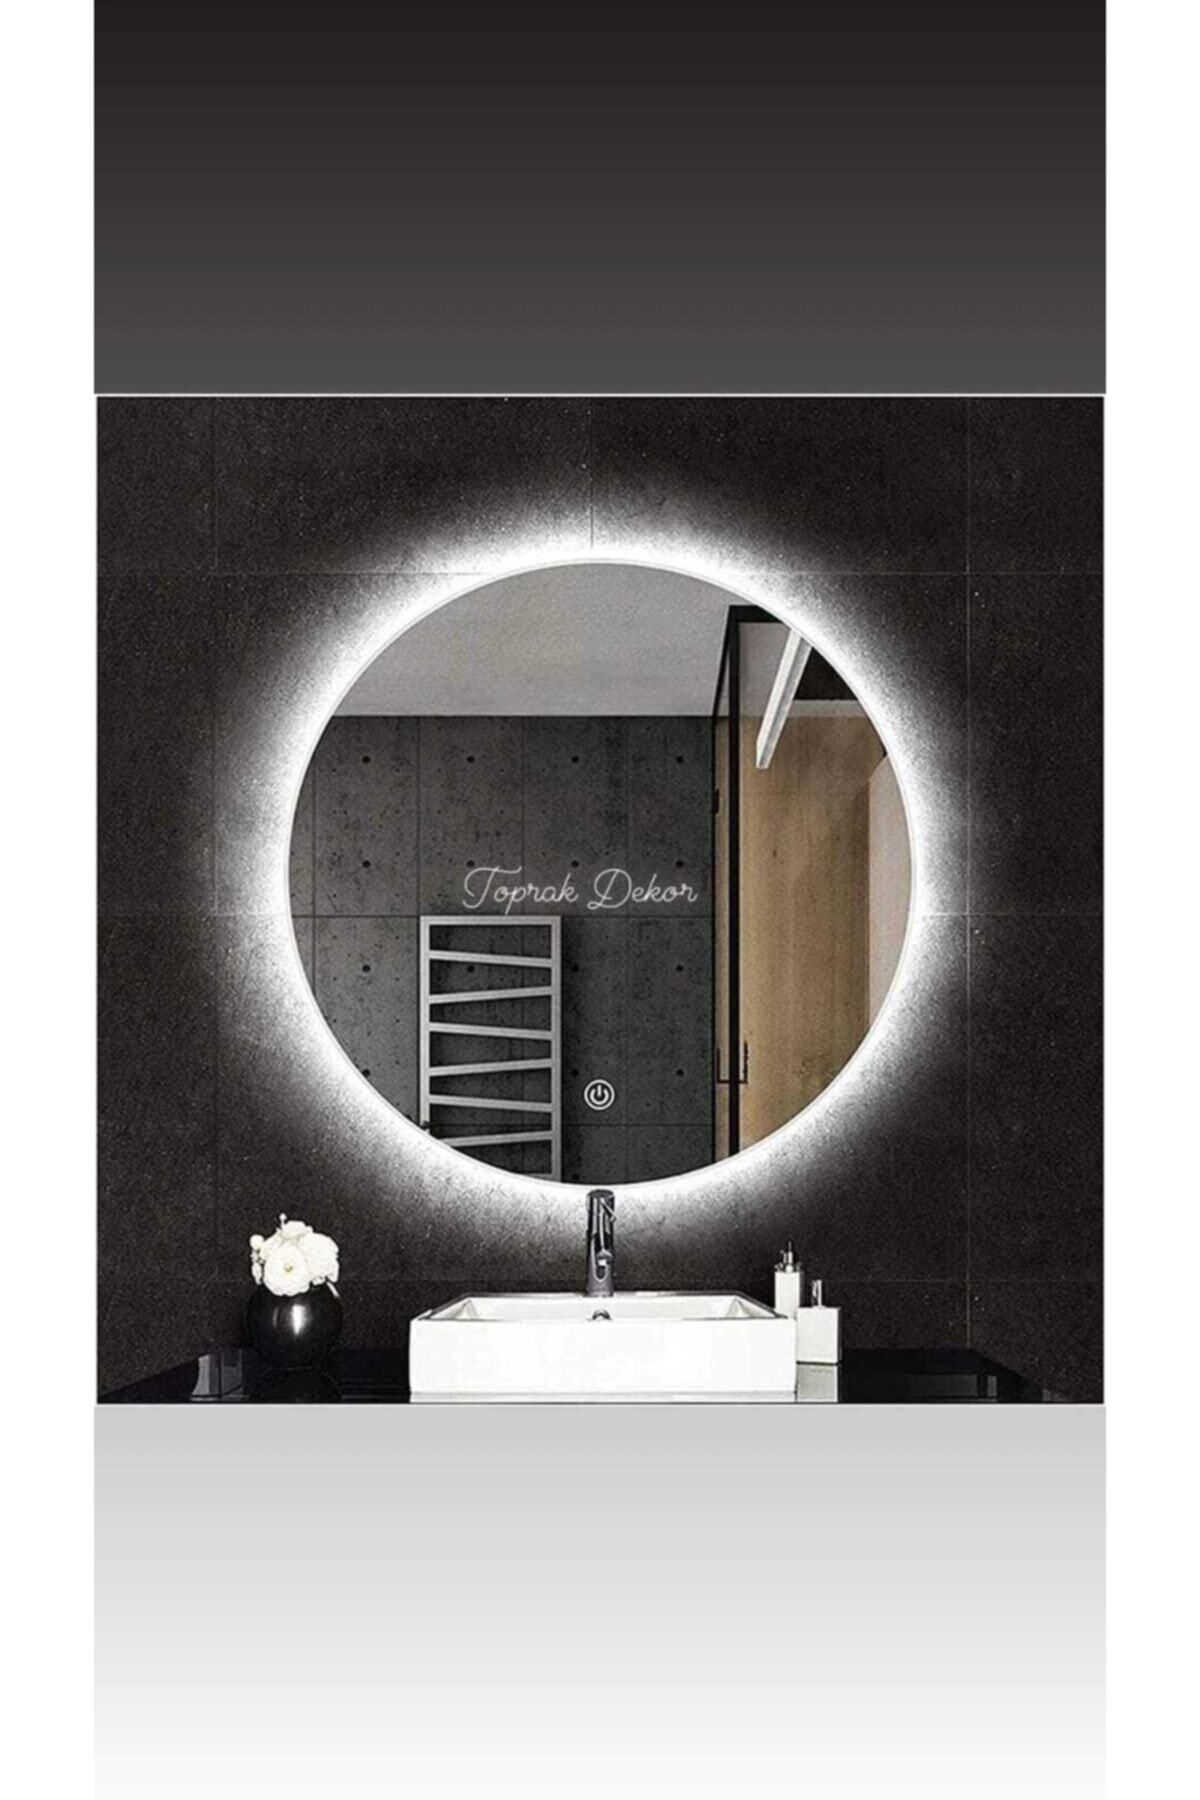 Toprak dekor 70 Cm Dokunmatik (DİMMER ÖZELLİKLİ)günışığı Ledli Banyo Aynası Ledli Ayna